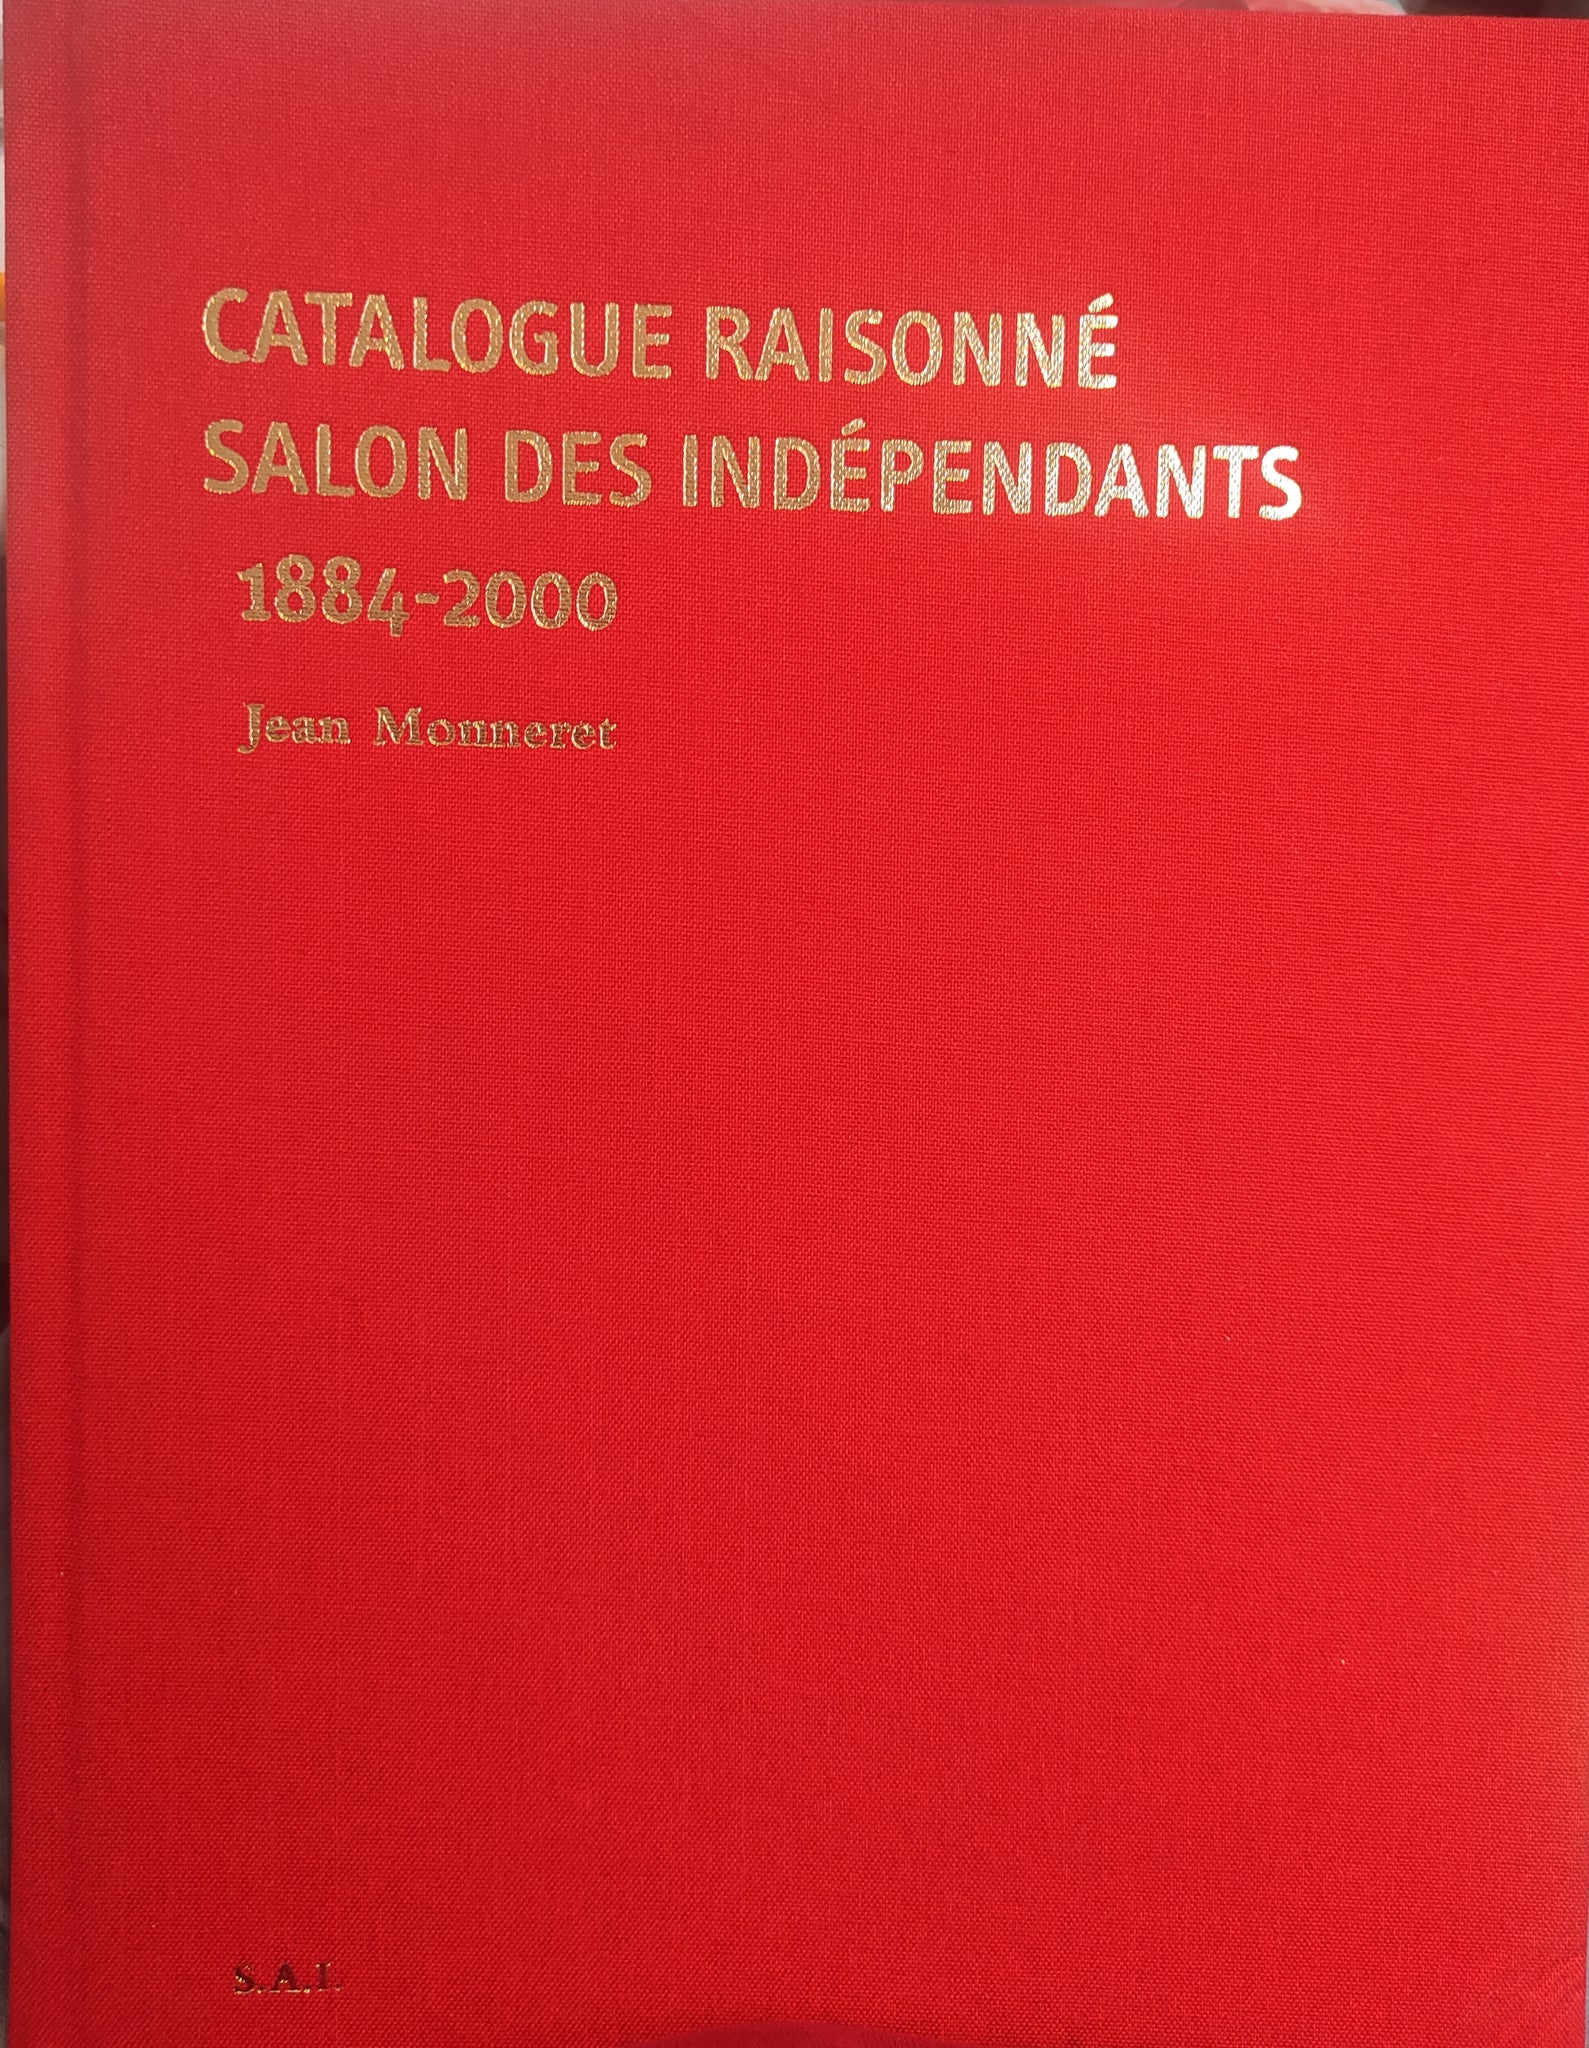 Catalogue raisonné: Salon des indépendants (1884-2000).